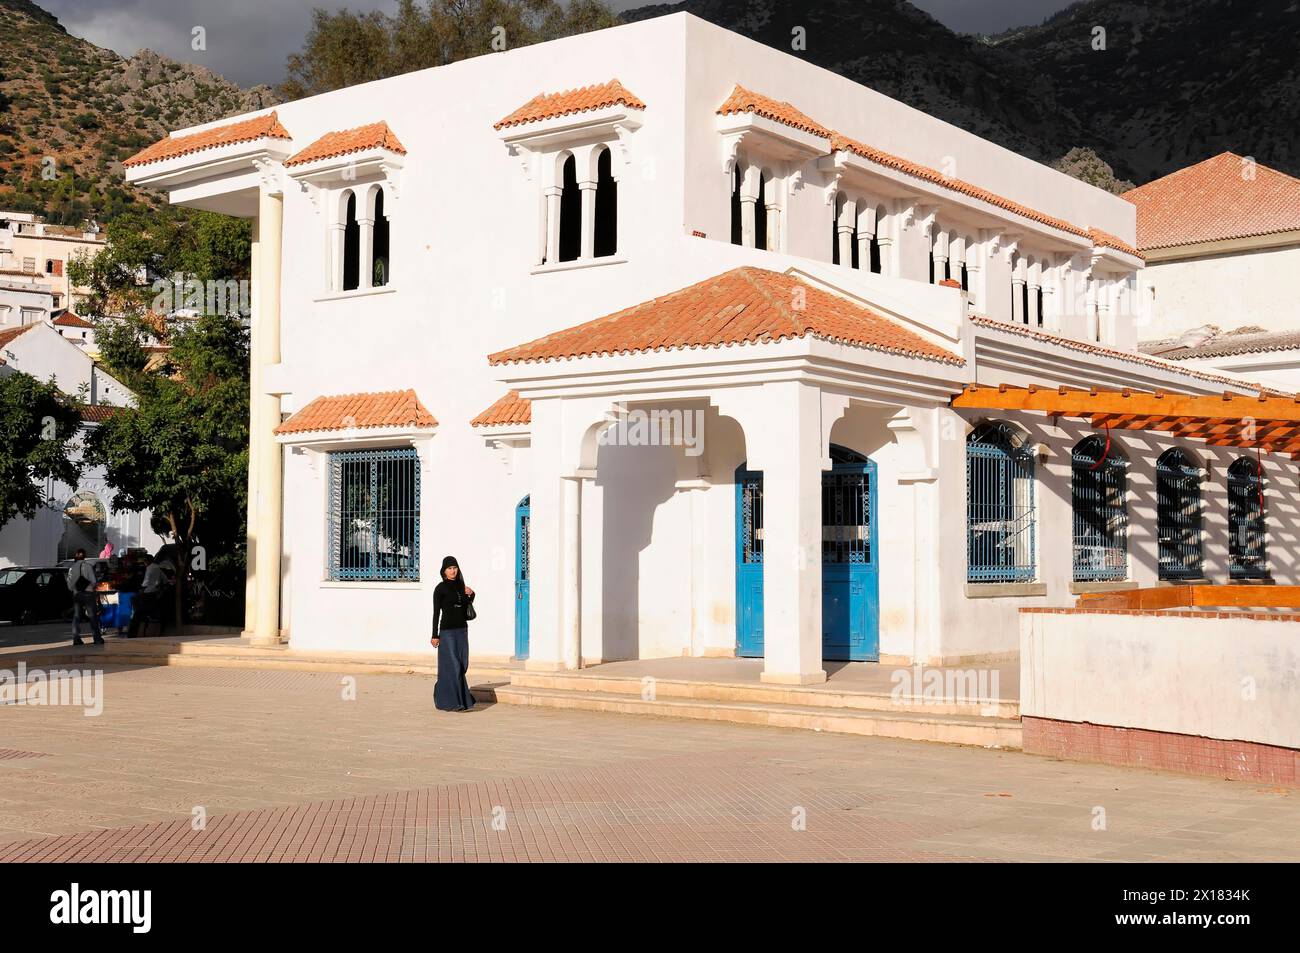 Bâtiment administratif, Chefchaouen, Un bâtiment blanc ensoleillé avec des volets bleus contre une montagne et un ciel bleu, Chefchaouen, Maroc Banque D'Images